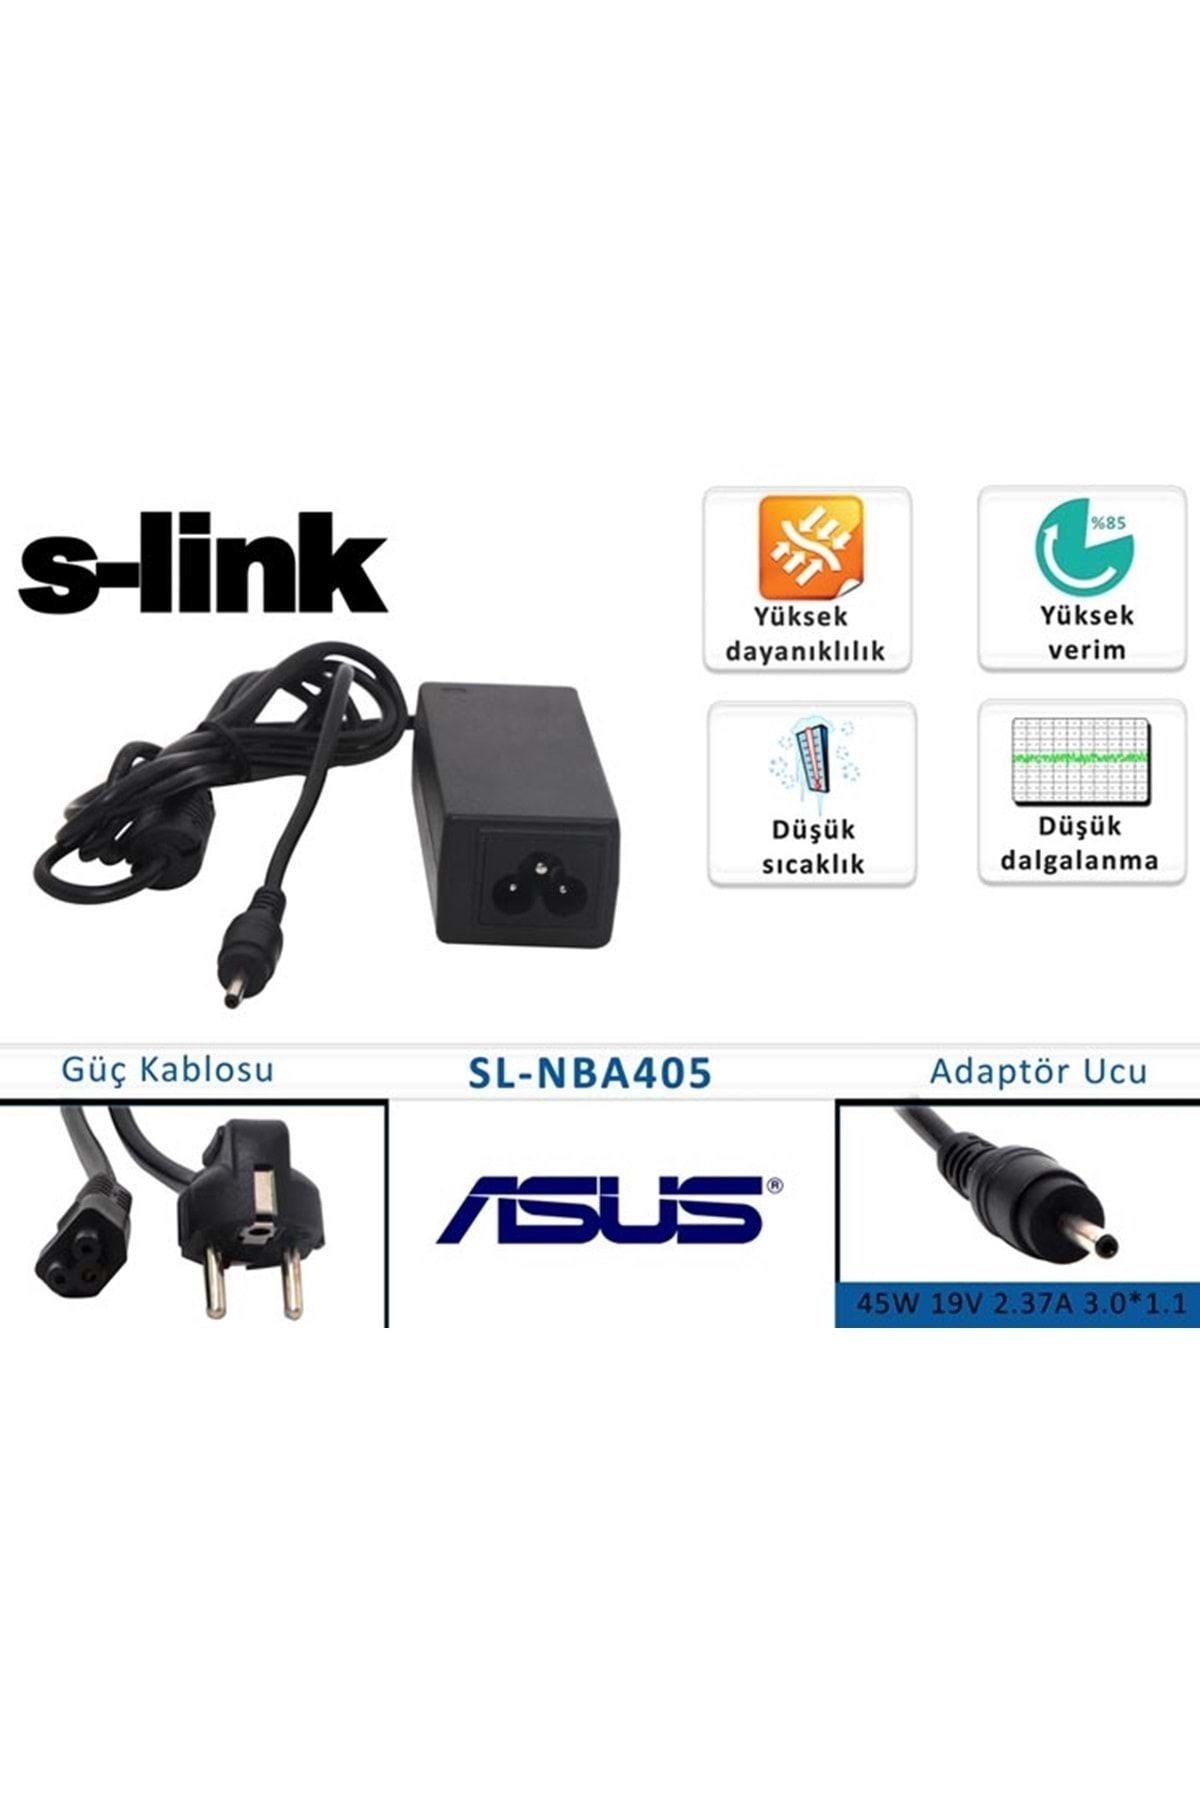 S-Link Swapp S-link Sl-nba405 45w 19v 2.37a 3.0*1.1 Asus Notebook Standart Adaptör